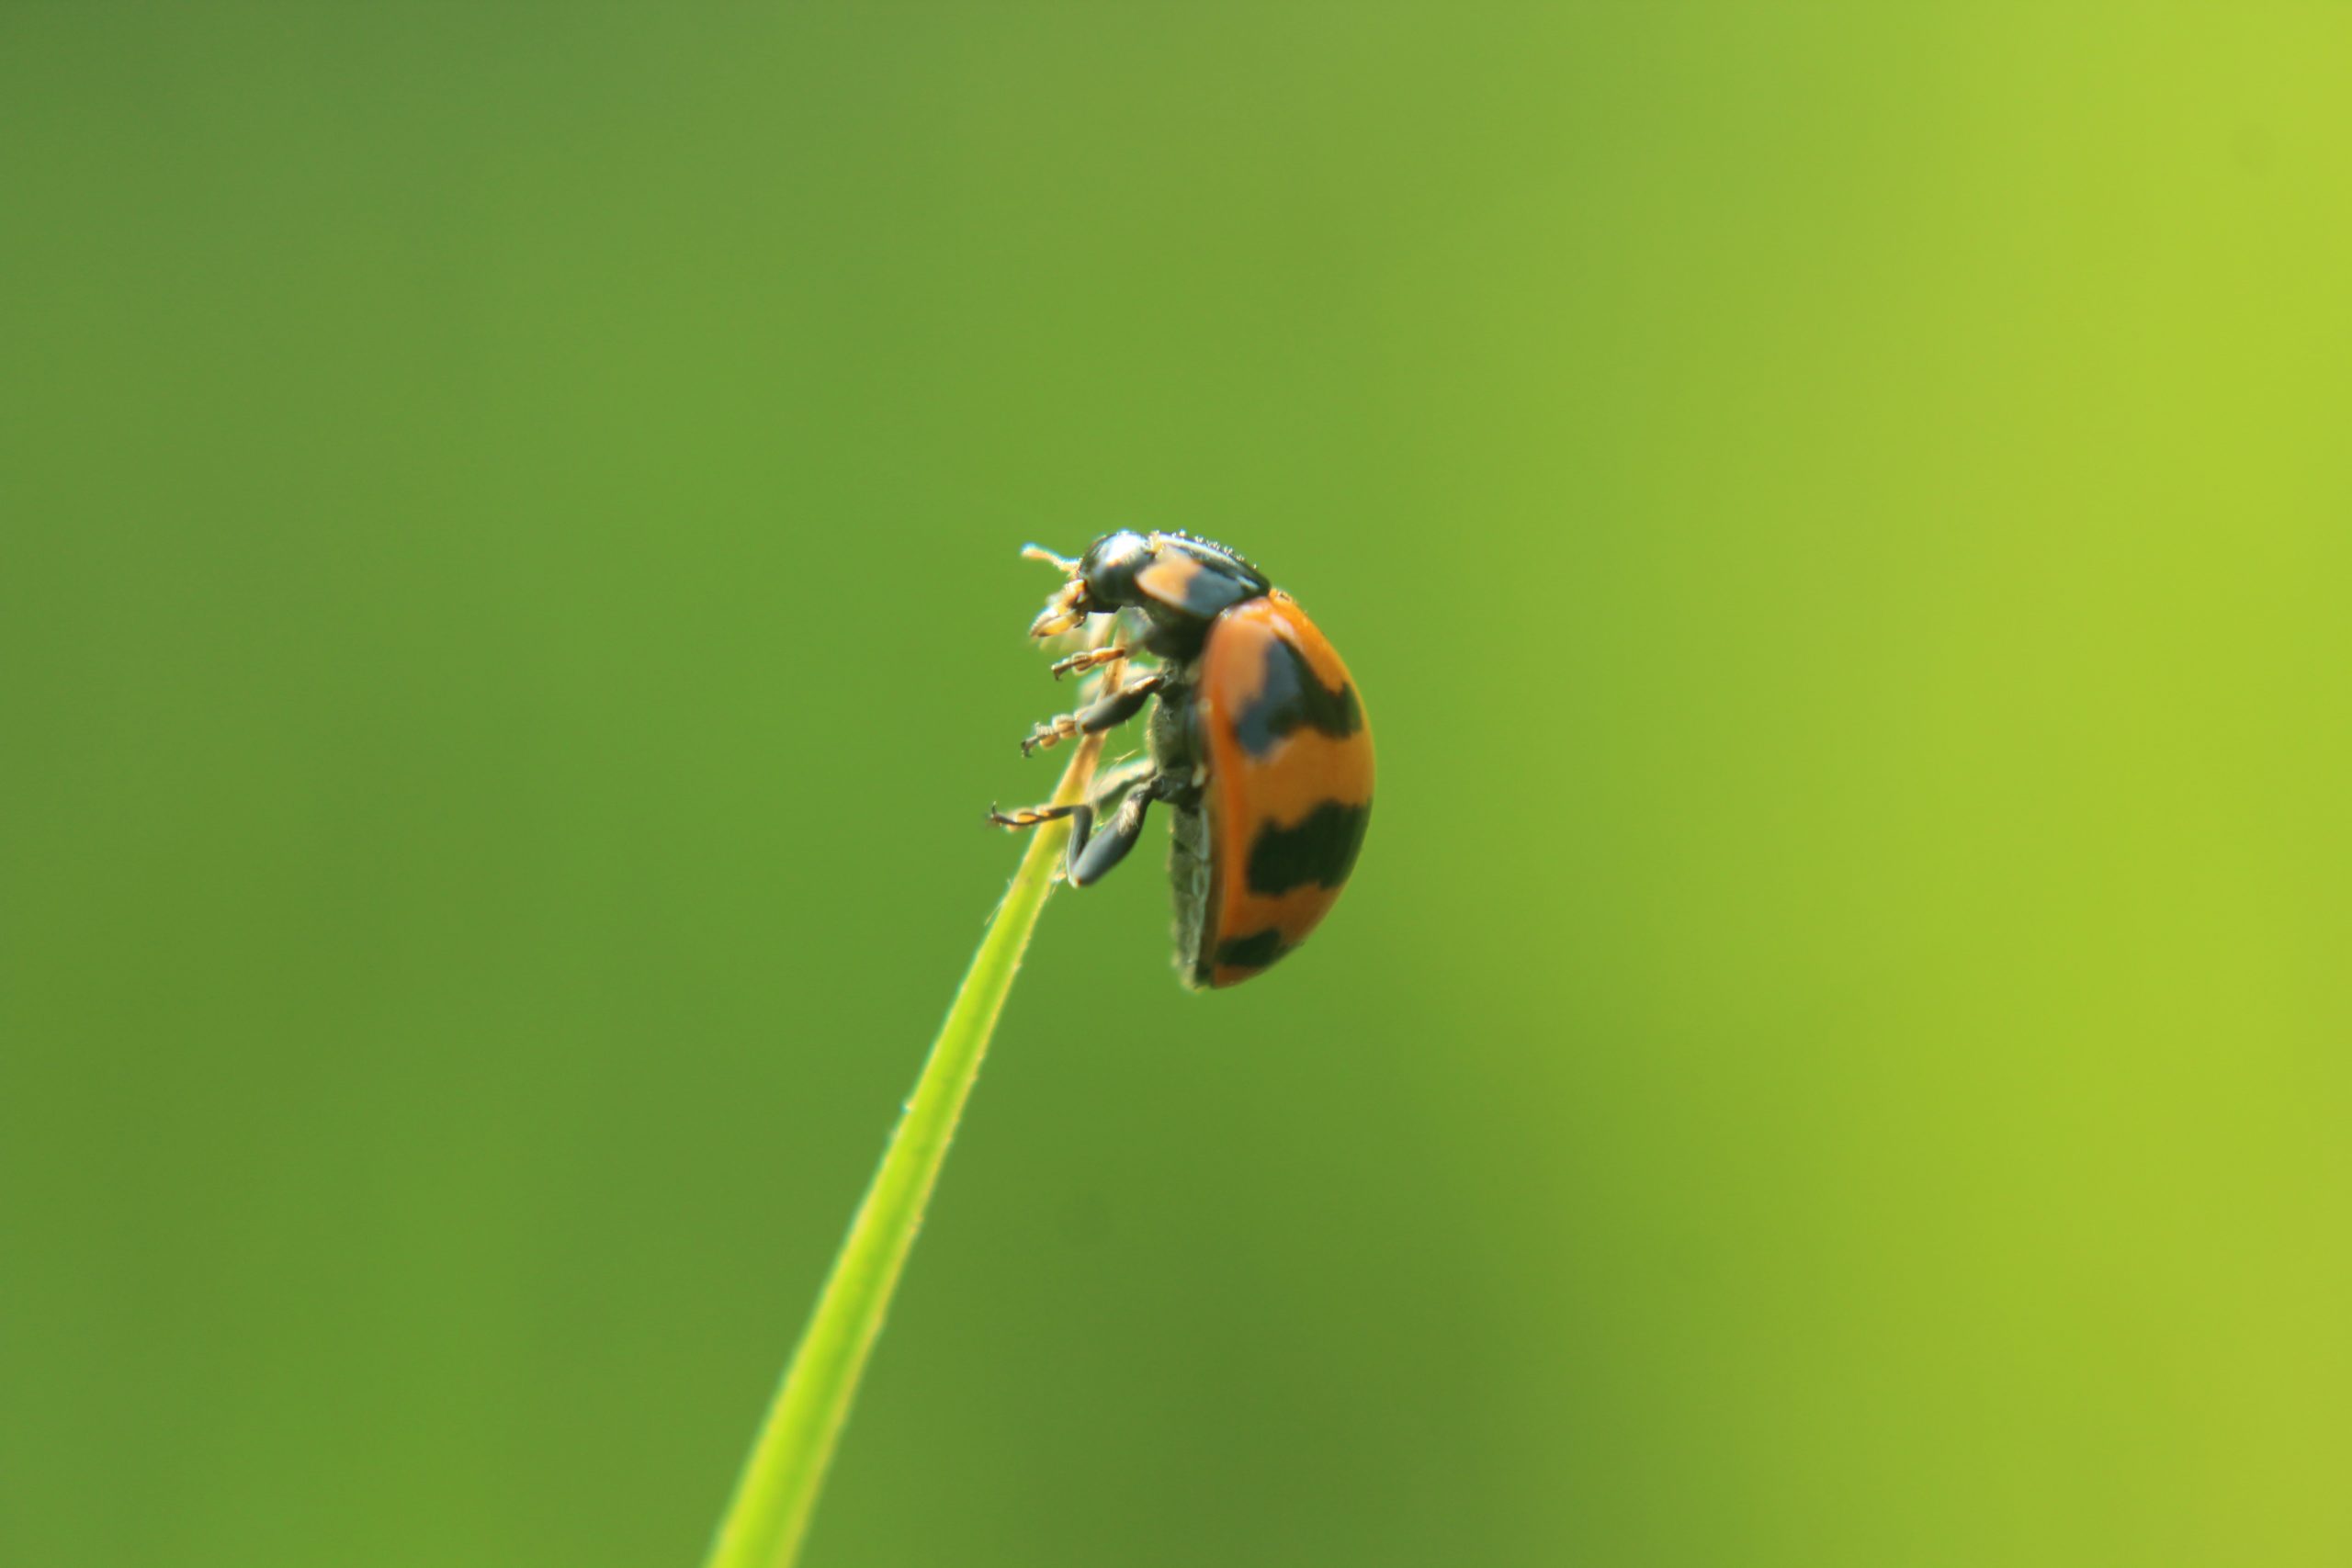 Close-Up of a Ladybug